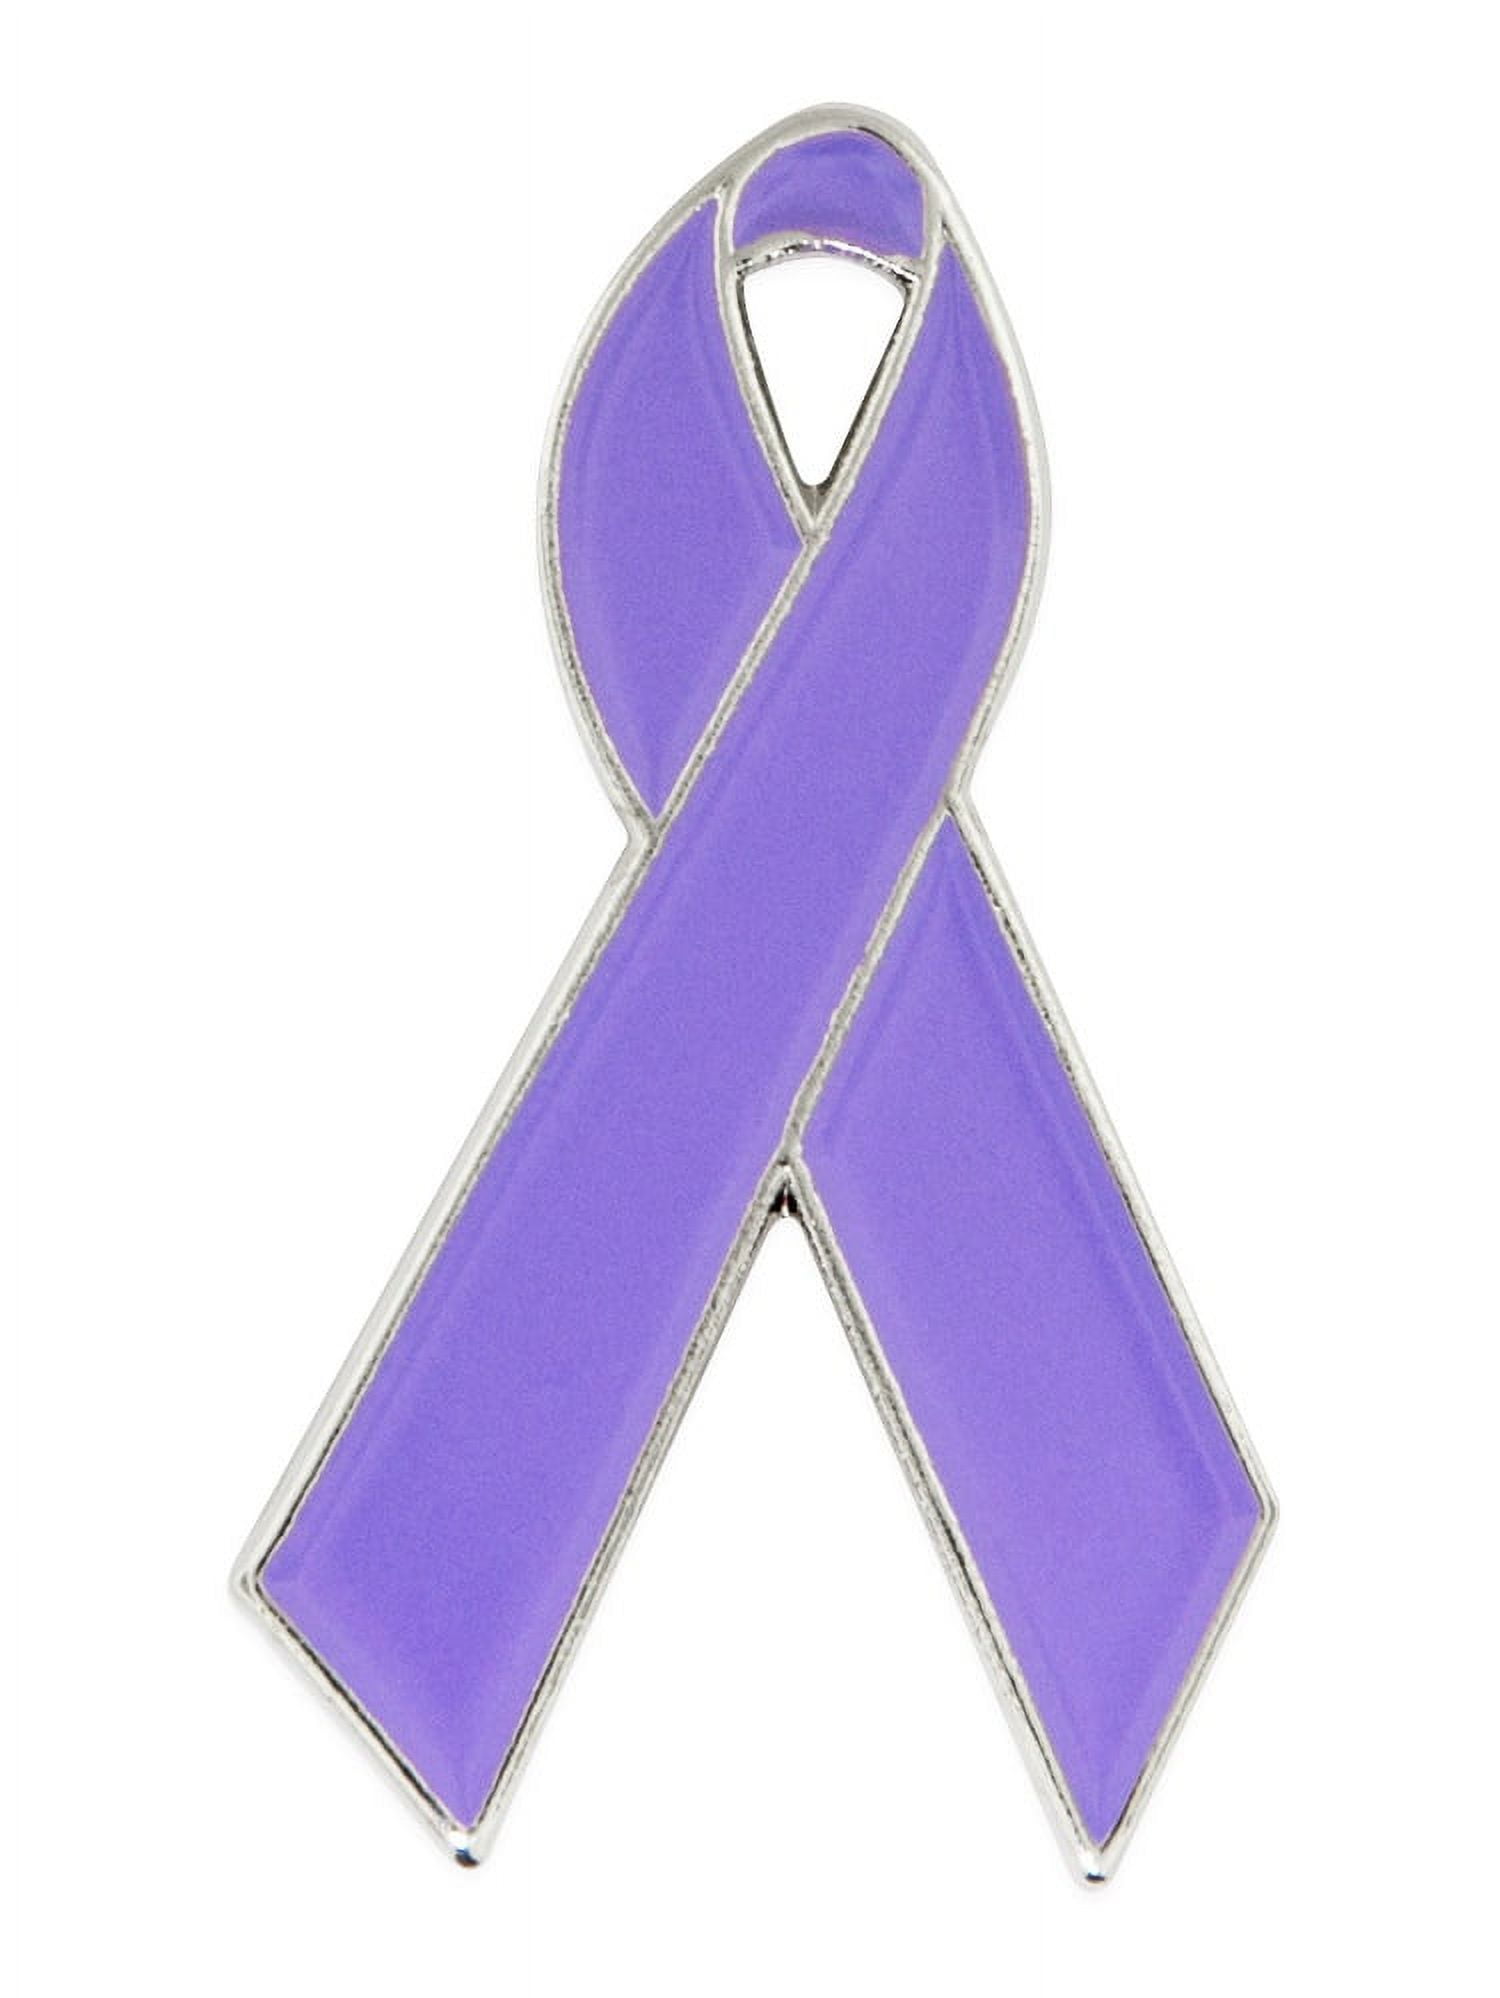 Pinmart Cancer Prevention Ribbon Or Cancer Survivor Awareness Enamel